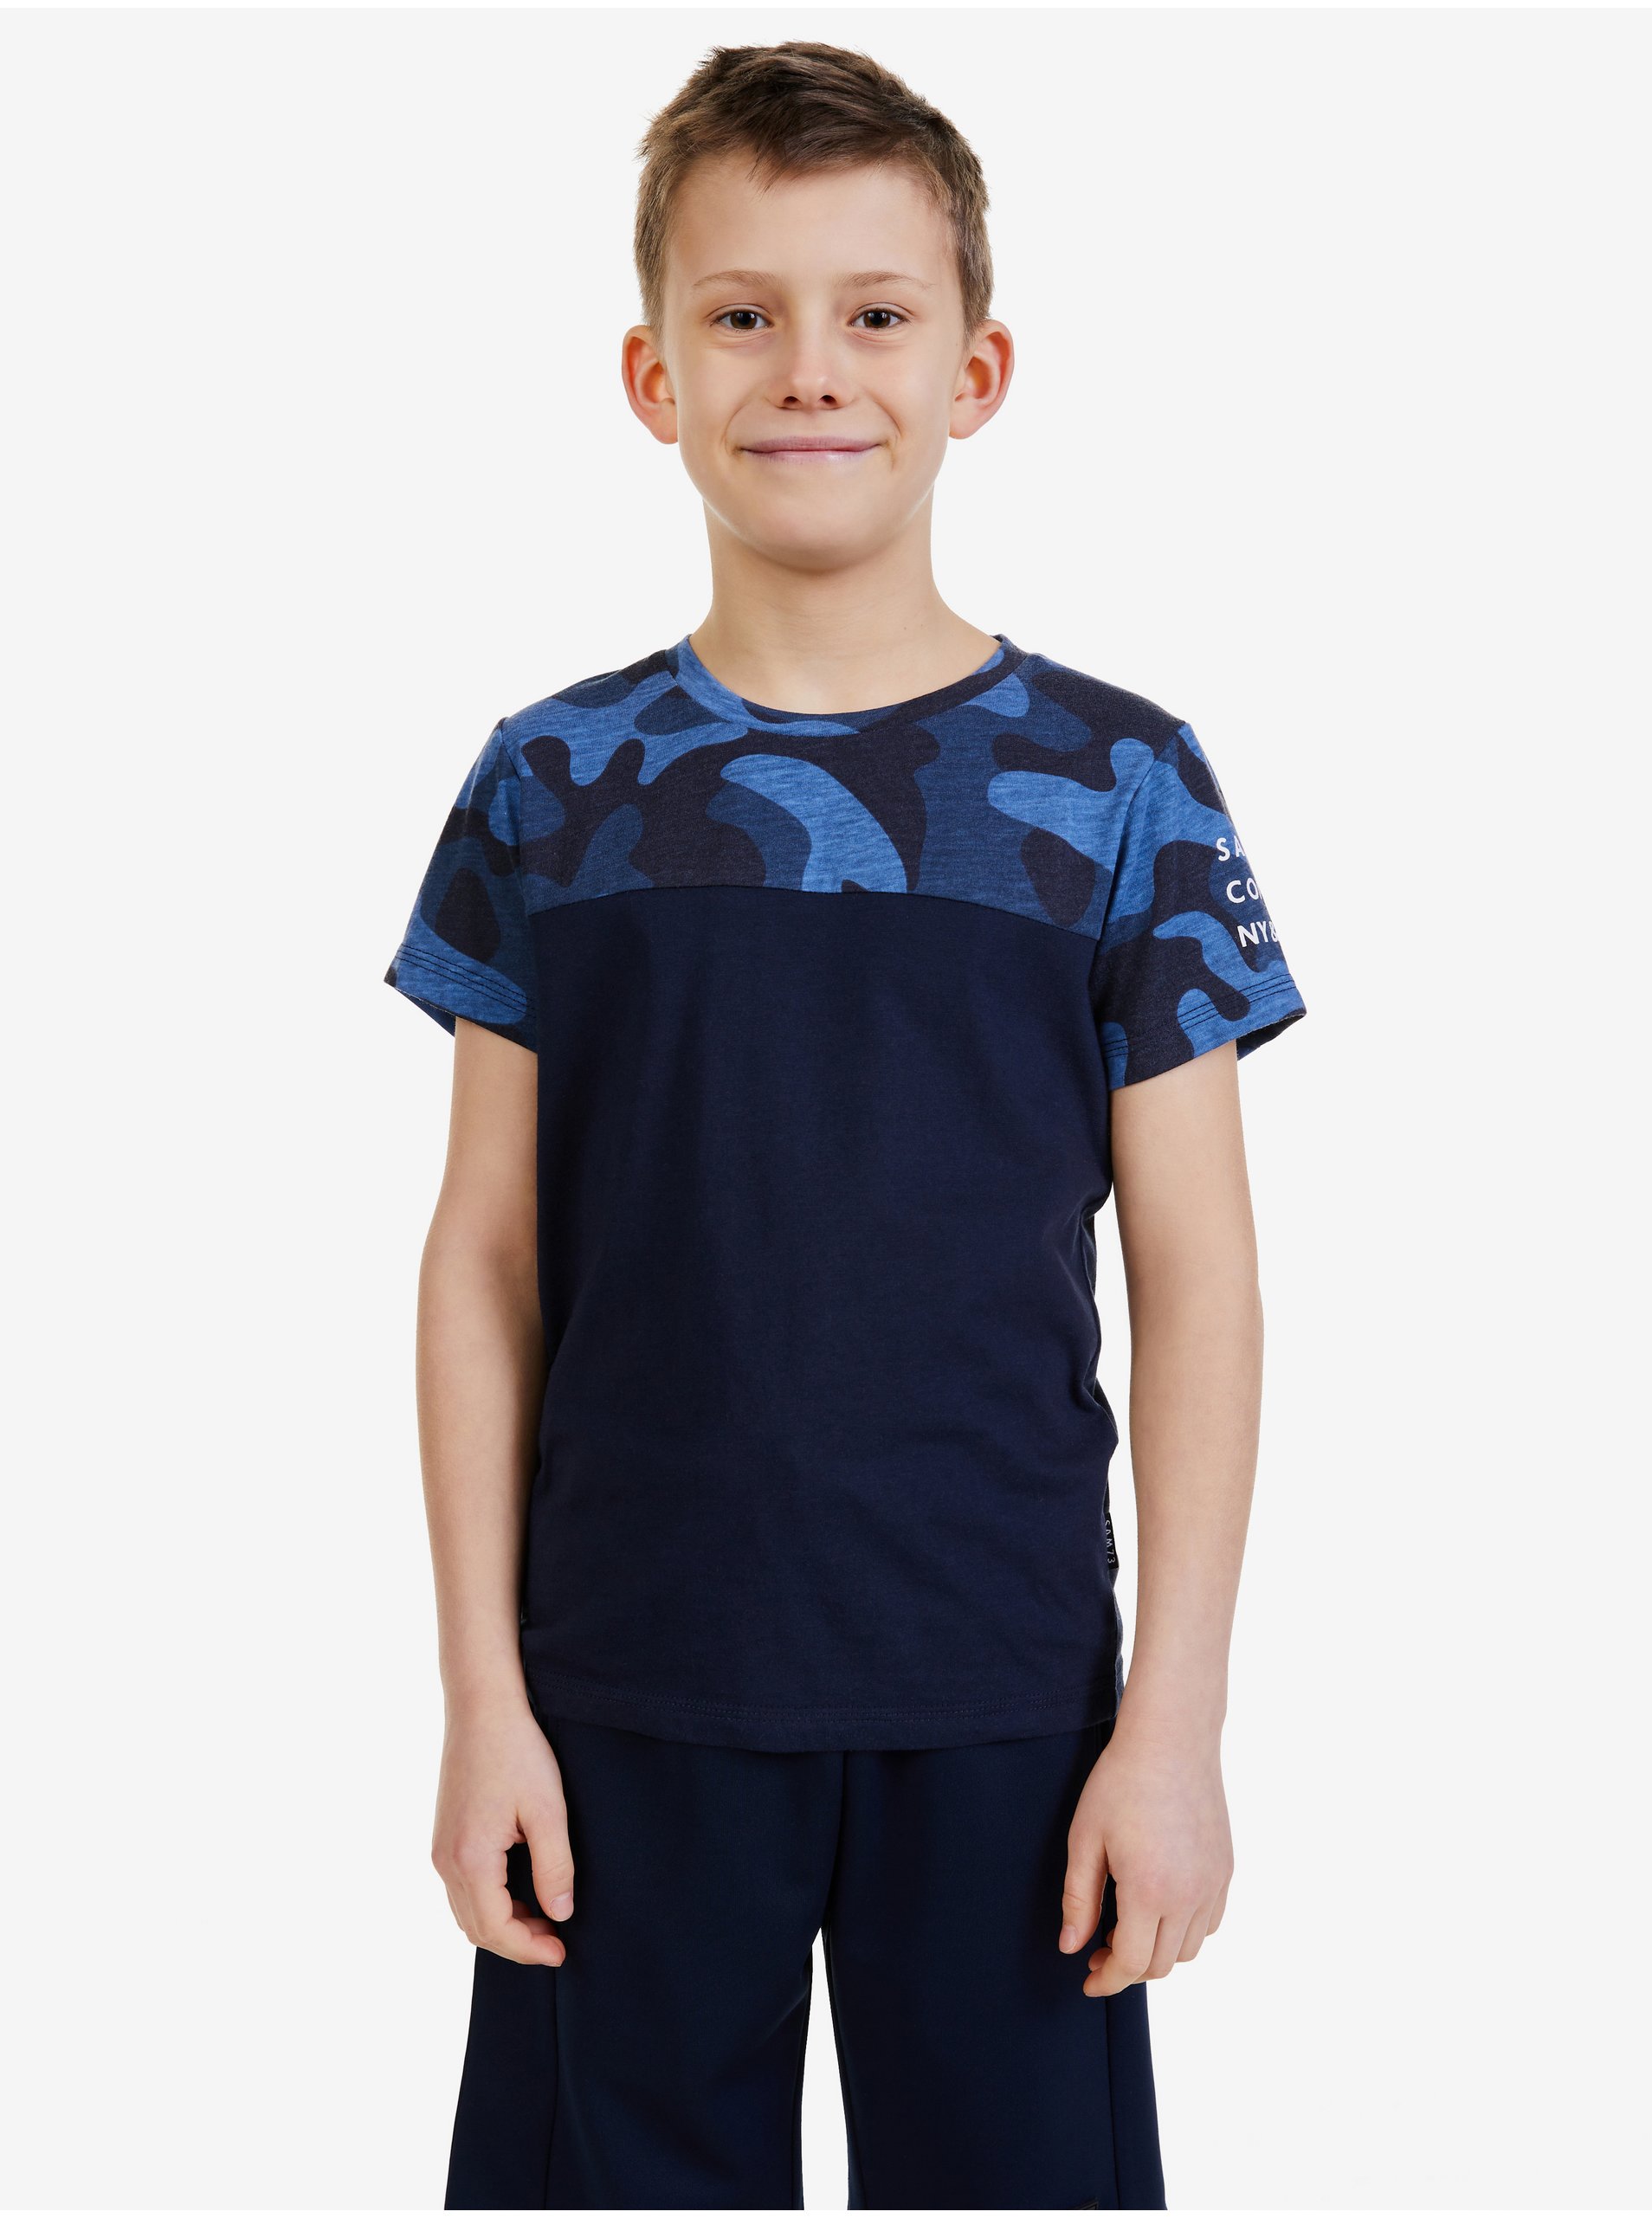 Lacno Tmavomodré chlapčenské vzorované tričko SAM 73 Moses